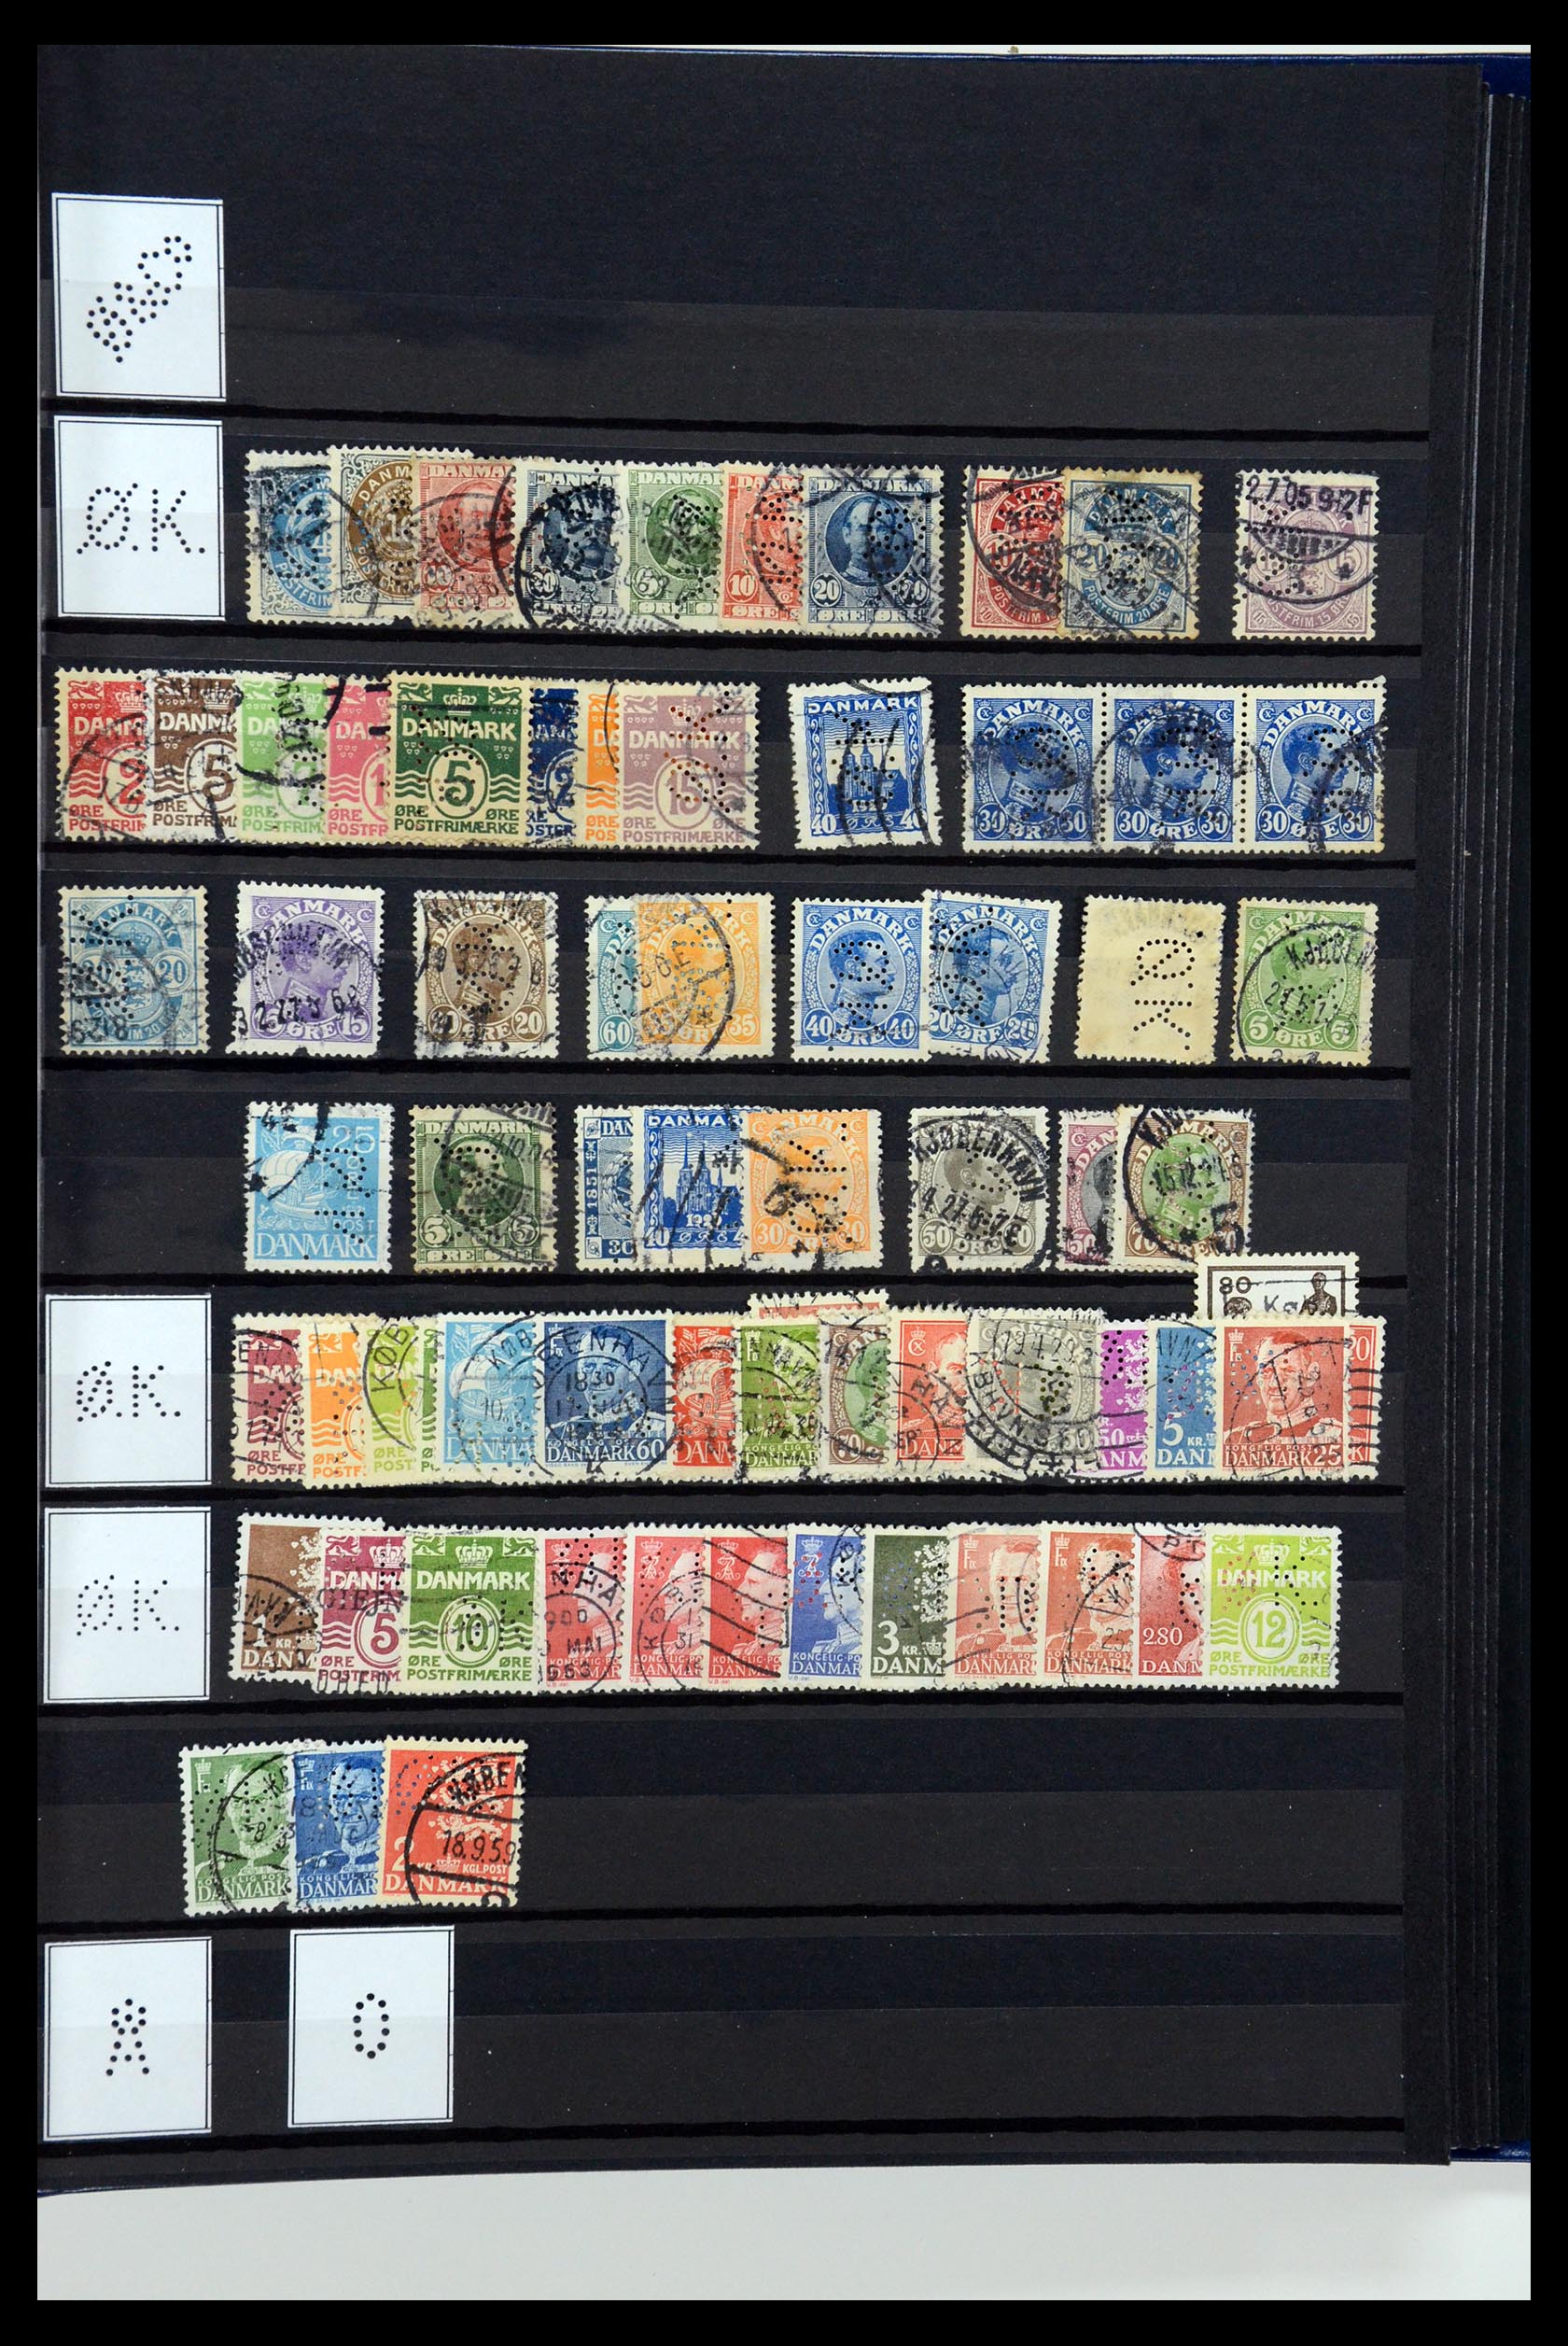 36396 227 - Postzegelverzameling 36396 Denemarken perfins.